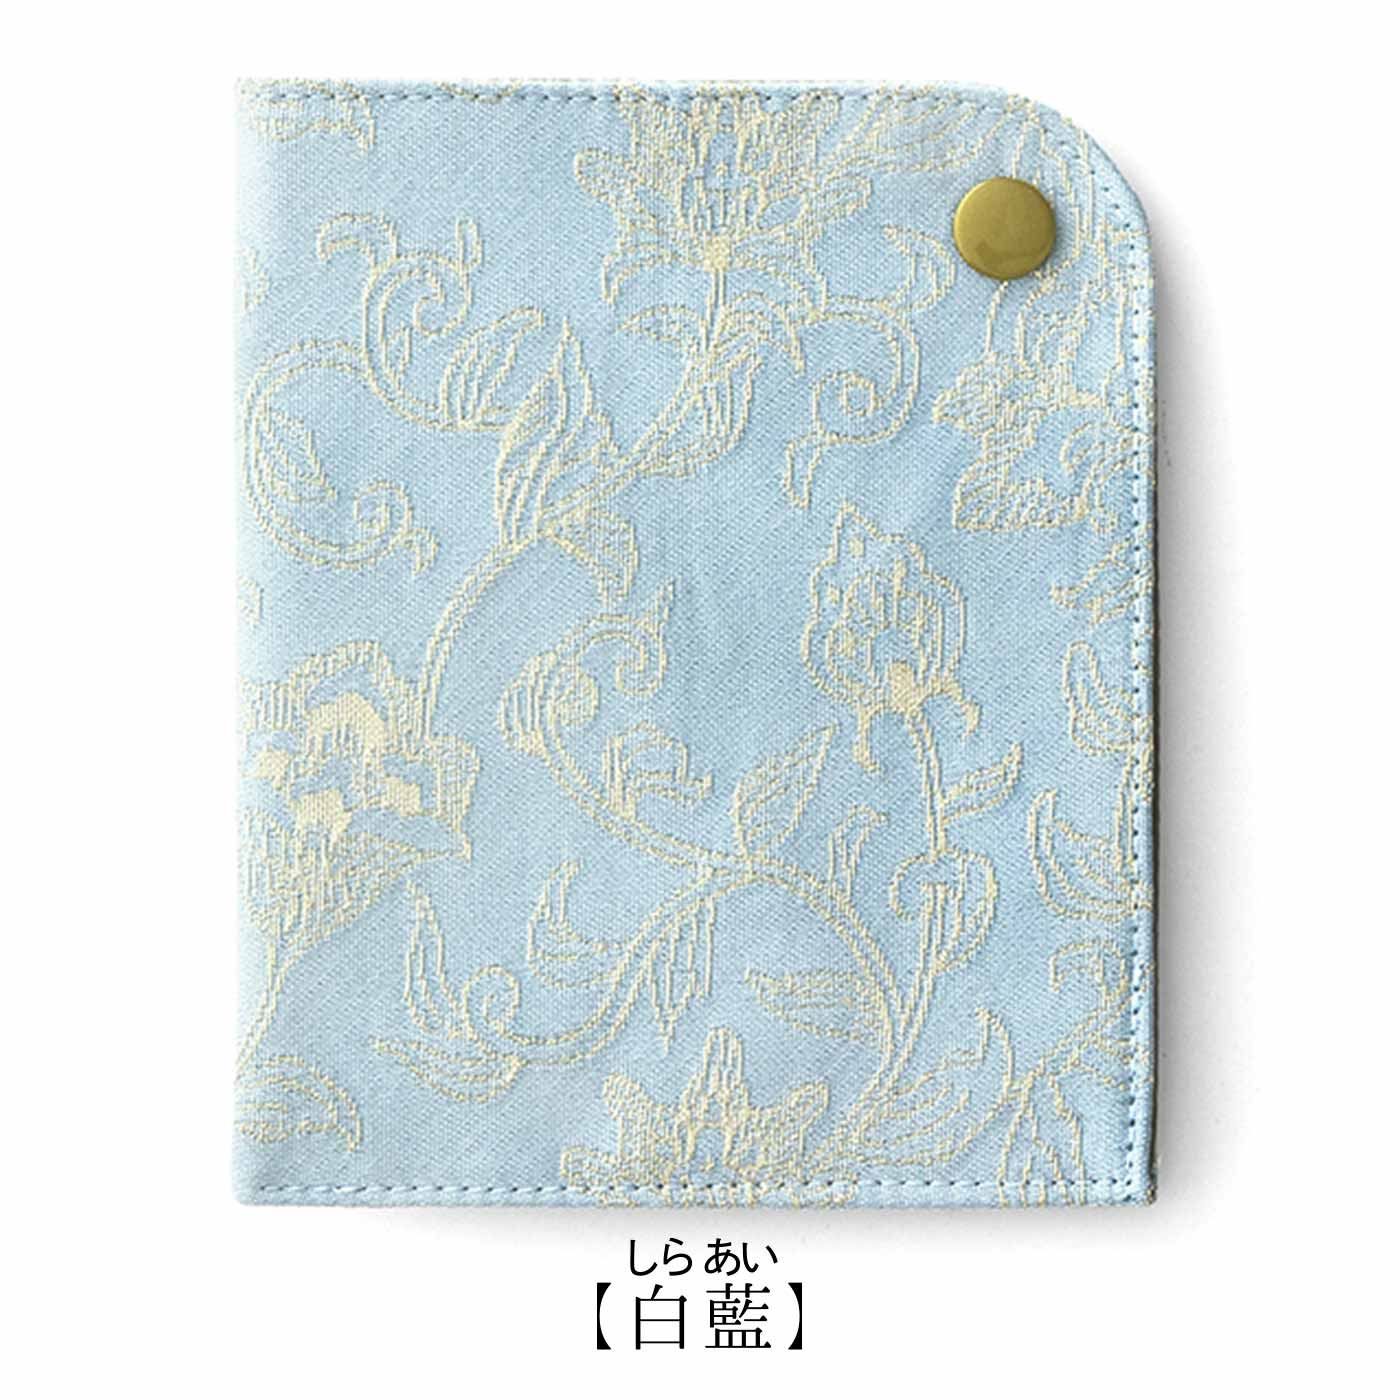 Real Stock|吉祥モチーフを西陣織で仕上げた宝相華（ほうそうげ）文様の制菌マスクケース|〈1. 白藍〉日本の伝統色から「白藍（しらあい）」を使い、宝相華の美しさを表現しています。